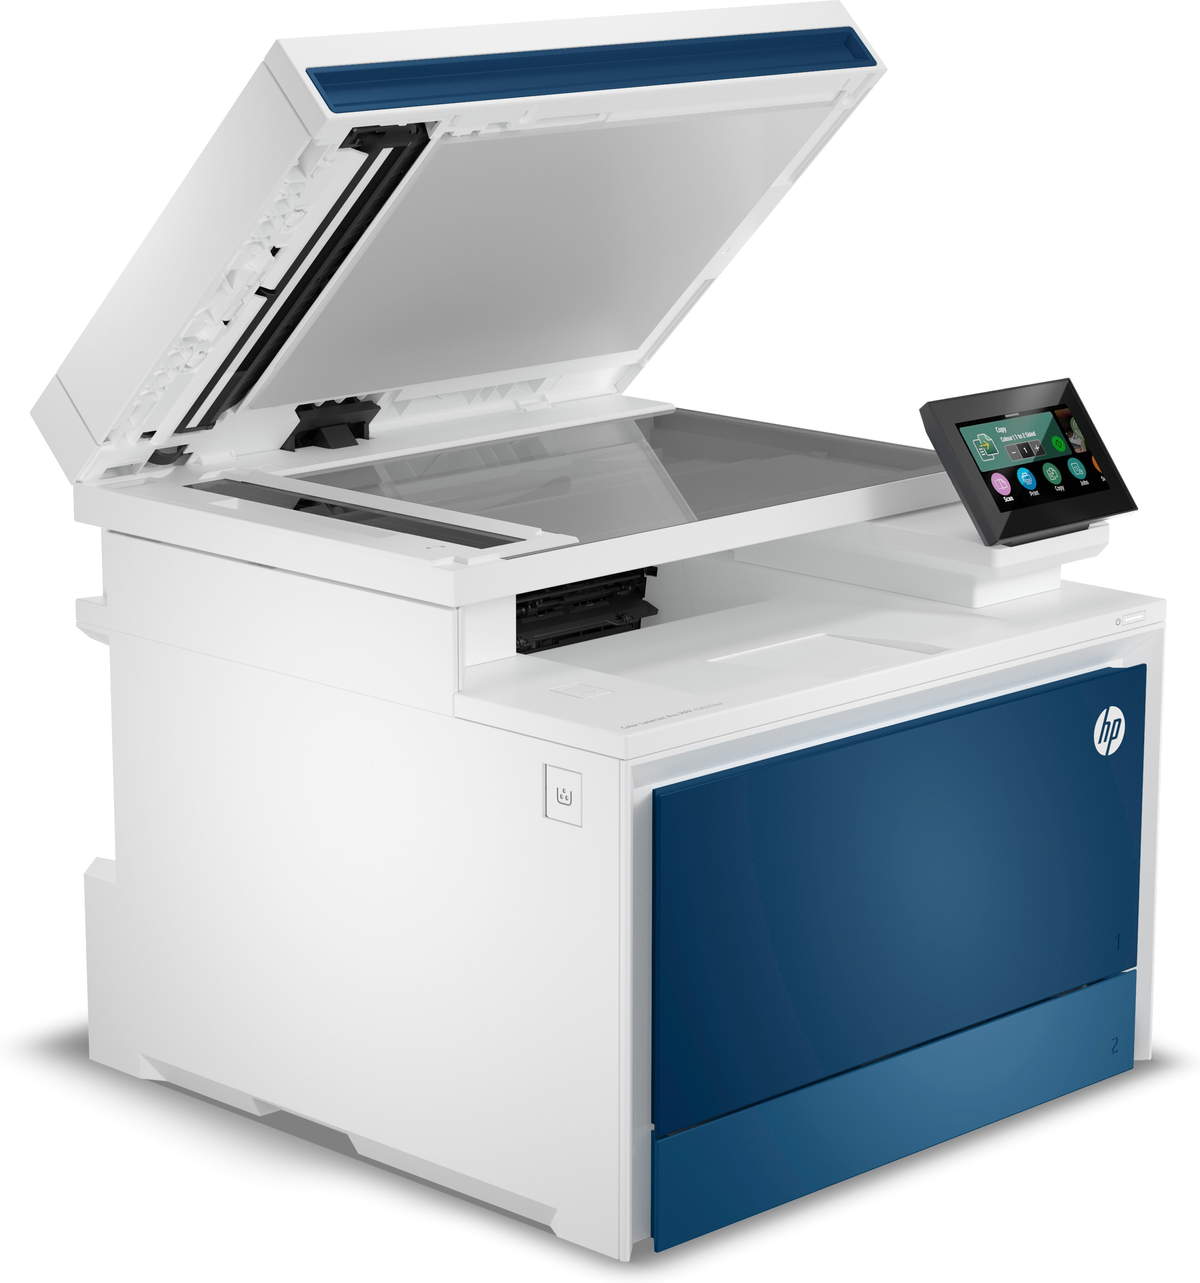 WLAN Laser HP Netzwerkfähig 5HH64F#B19 Multifunktionsdrucker